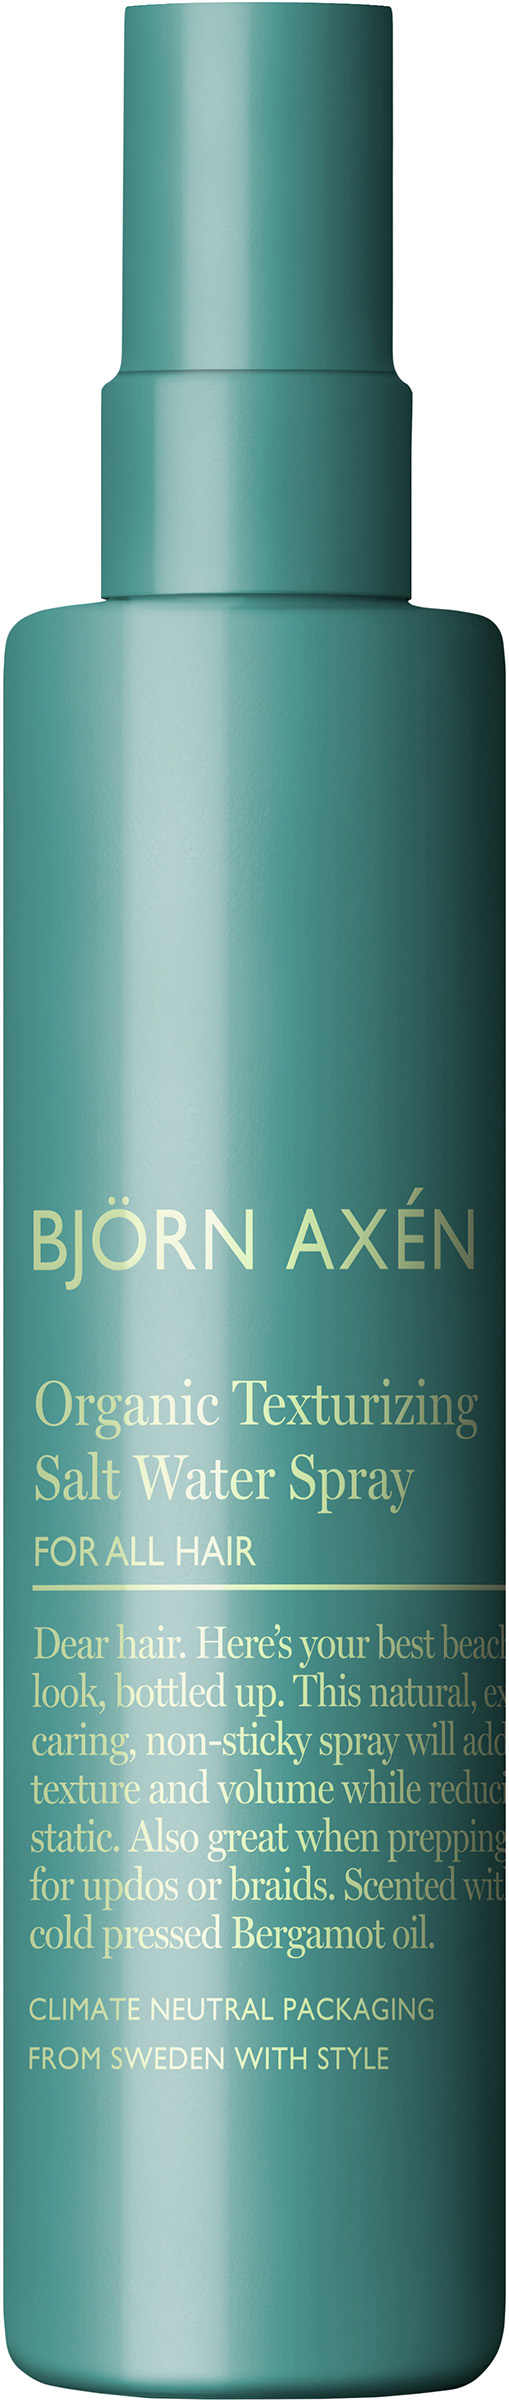 Björn Axén Organic texturizing salt water spray 150 ml